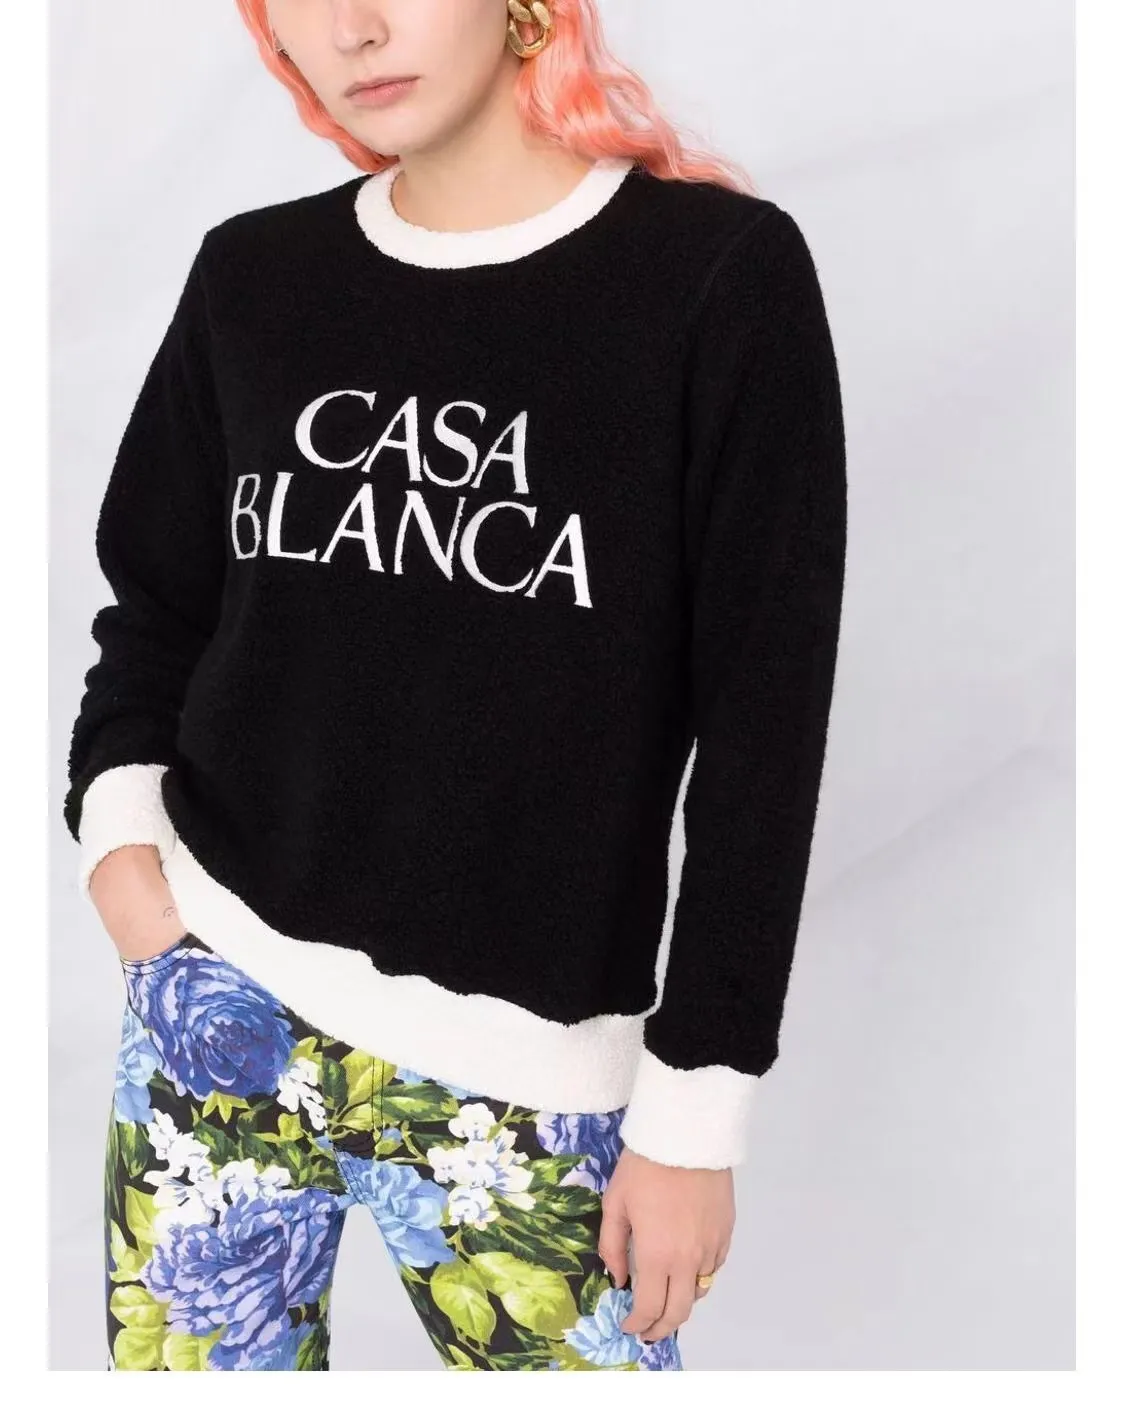 Новая толстовка с капюшоном Casablanca Модный мужской дизайнерский свитер Классический стиль Горячий буквенный принт Простой круглый повседневный универсальный шерстяной трикотаж с длинным рукавом с капюшоном Трендовые топы Casablanc